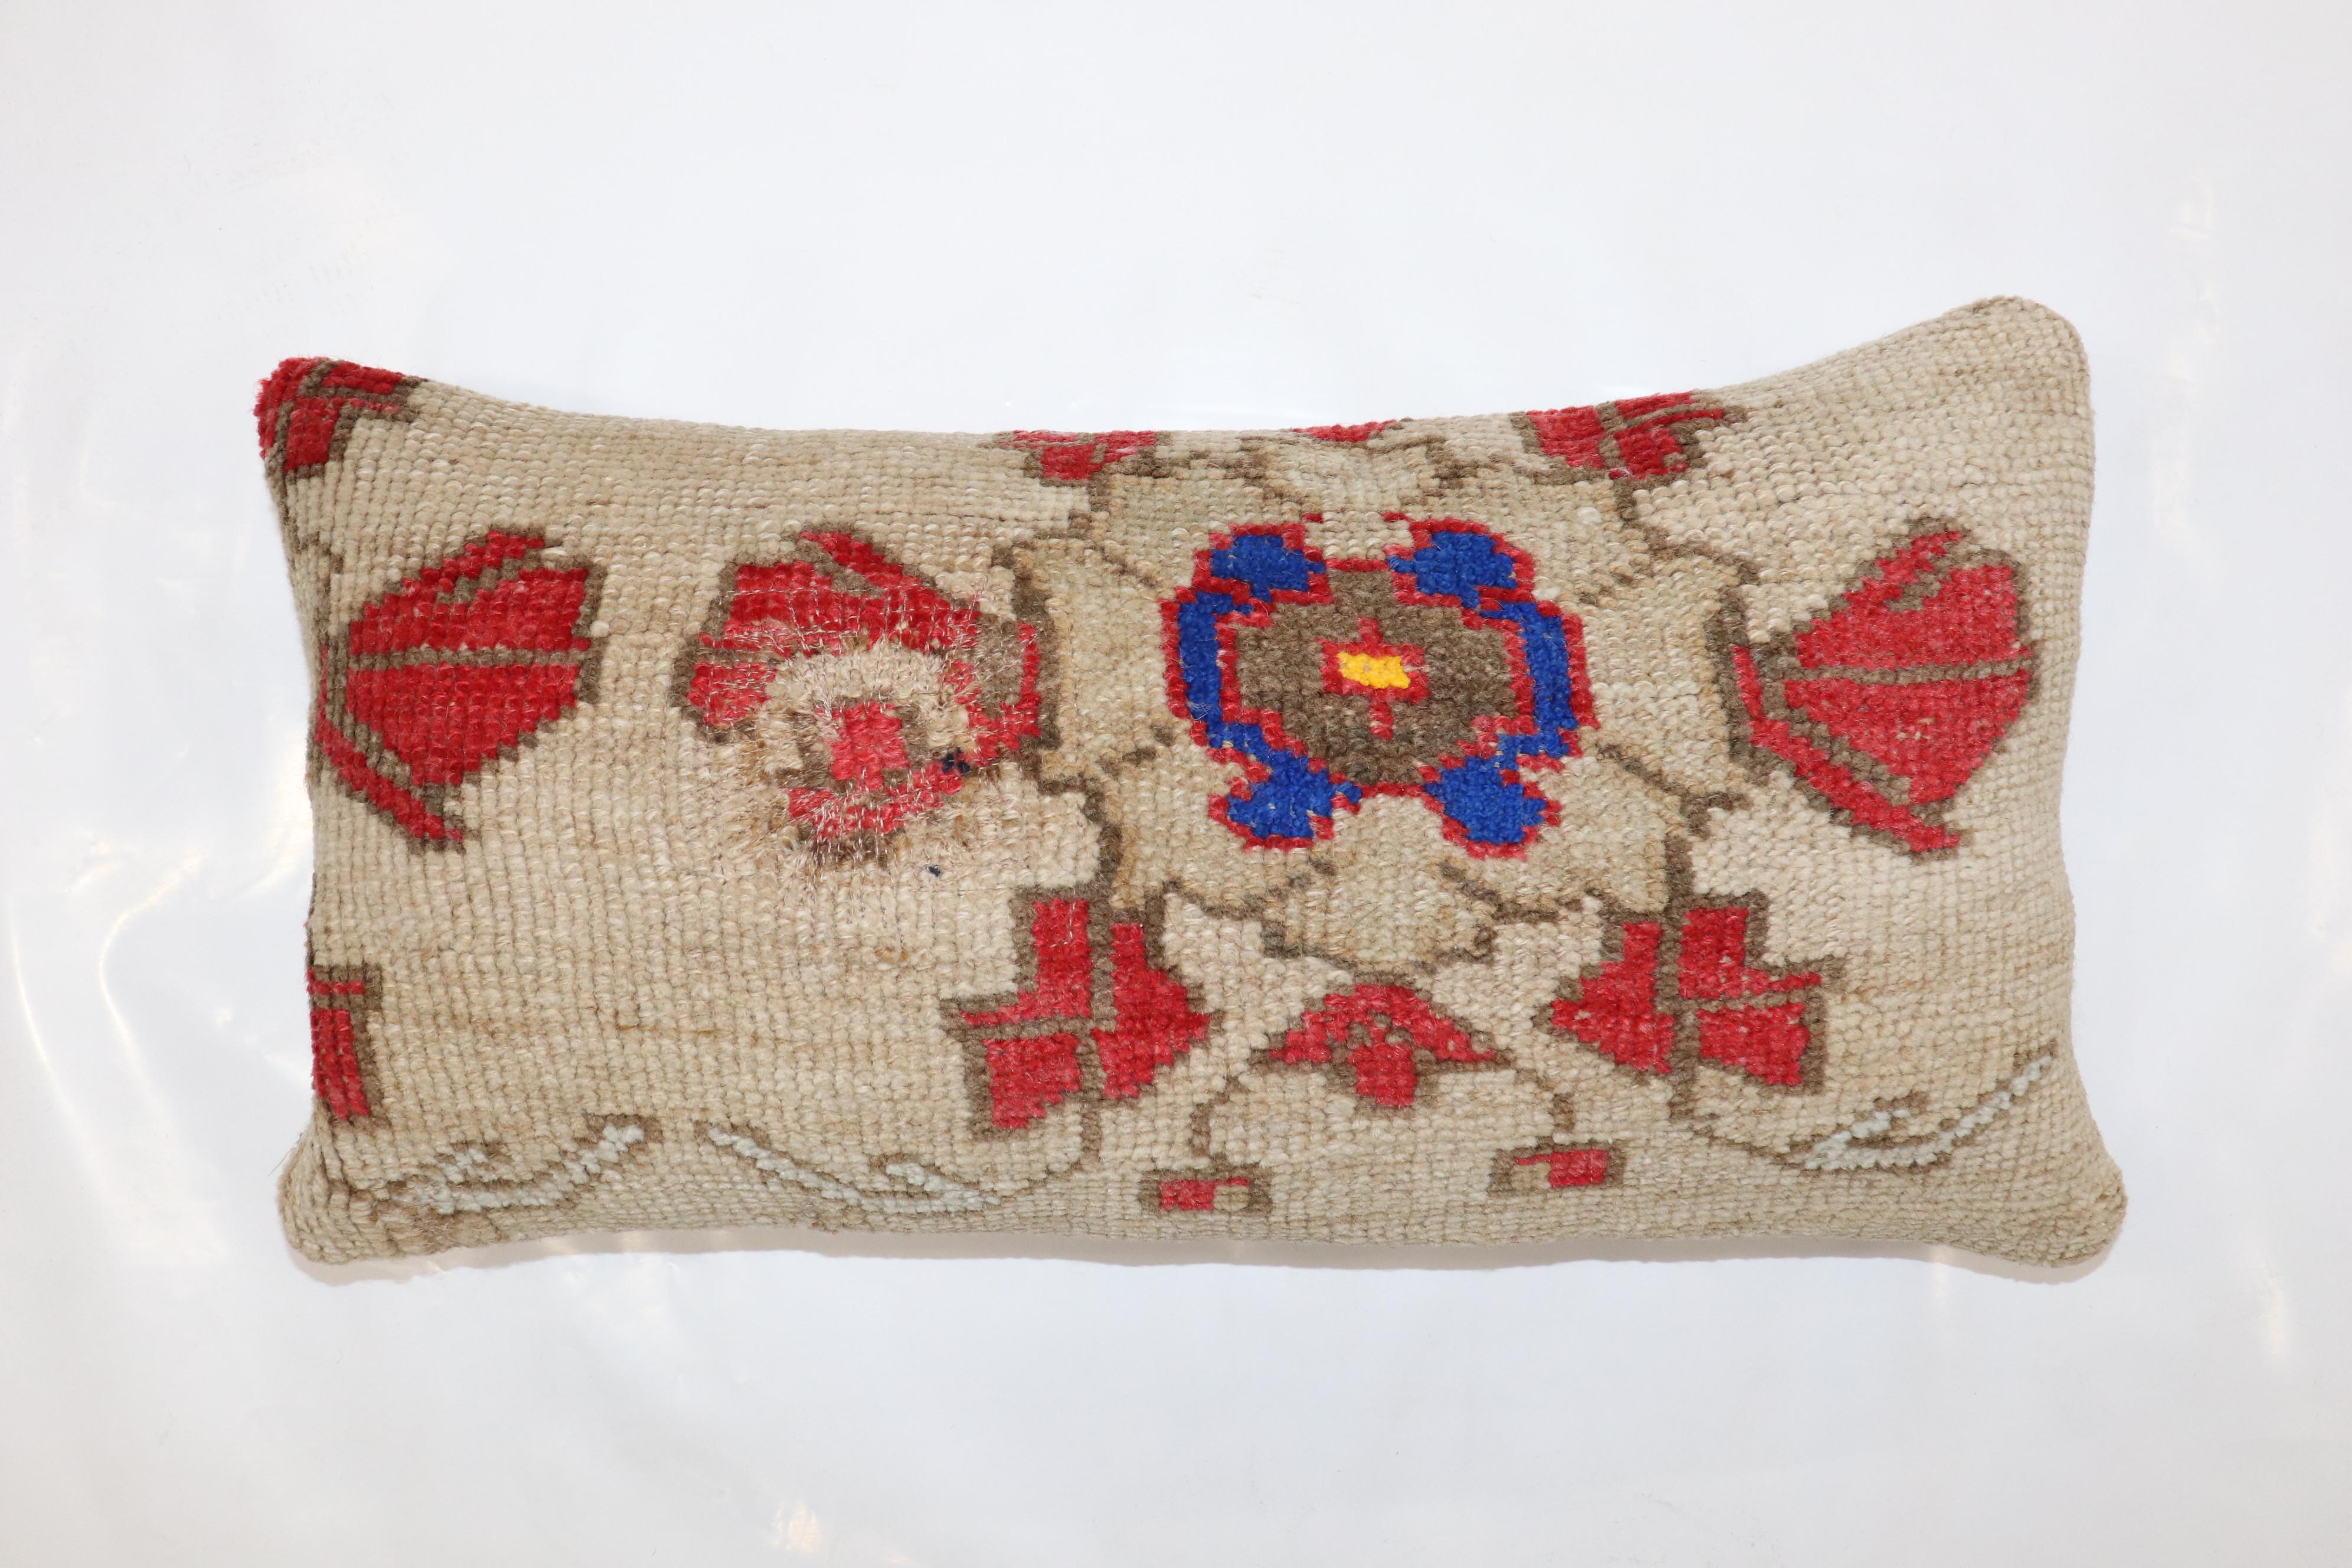 Großes Kissen aus einem alten türkischen Kars-Teppich

Maße: 12'' x 22''.